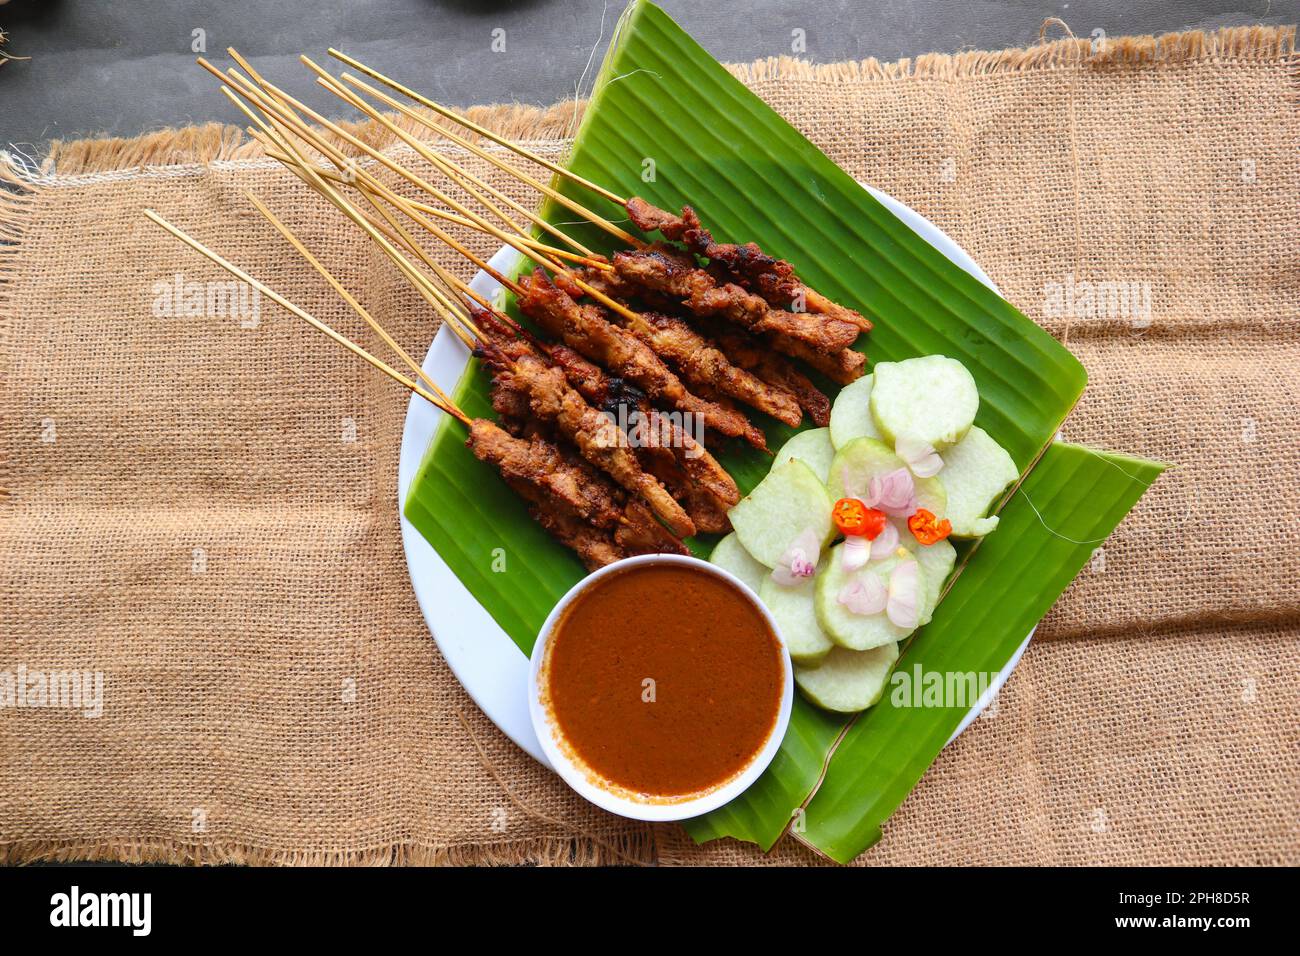 Hähnchen Satay oder Hähnchen Satay serviert mit Longtong, Reiskuchen und Erdnusssoße. Serviert auf Bananenurlaub Stockfoto